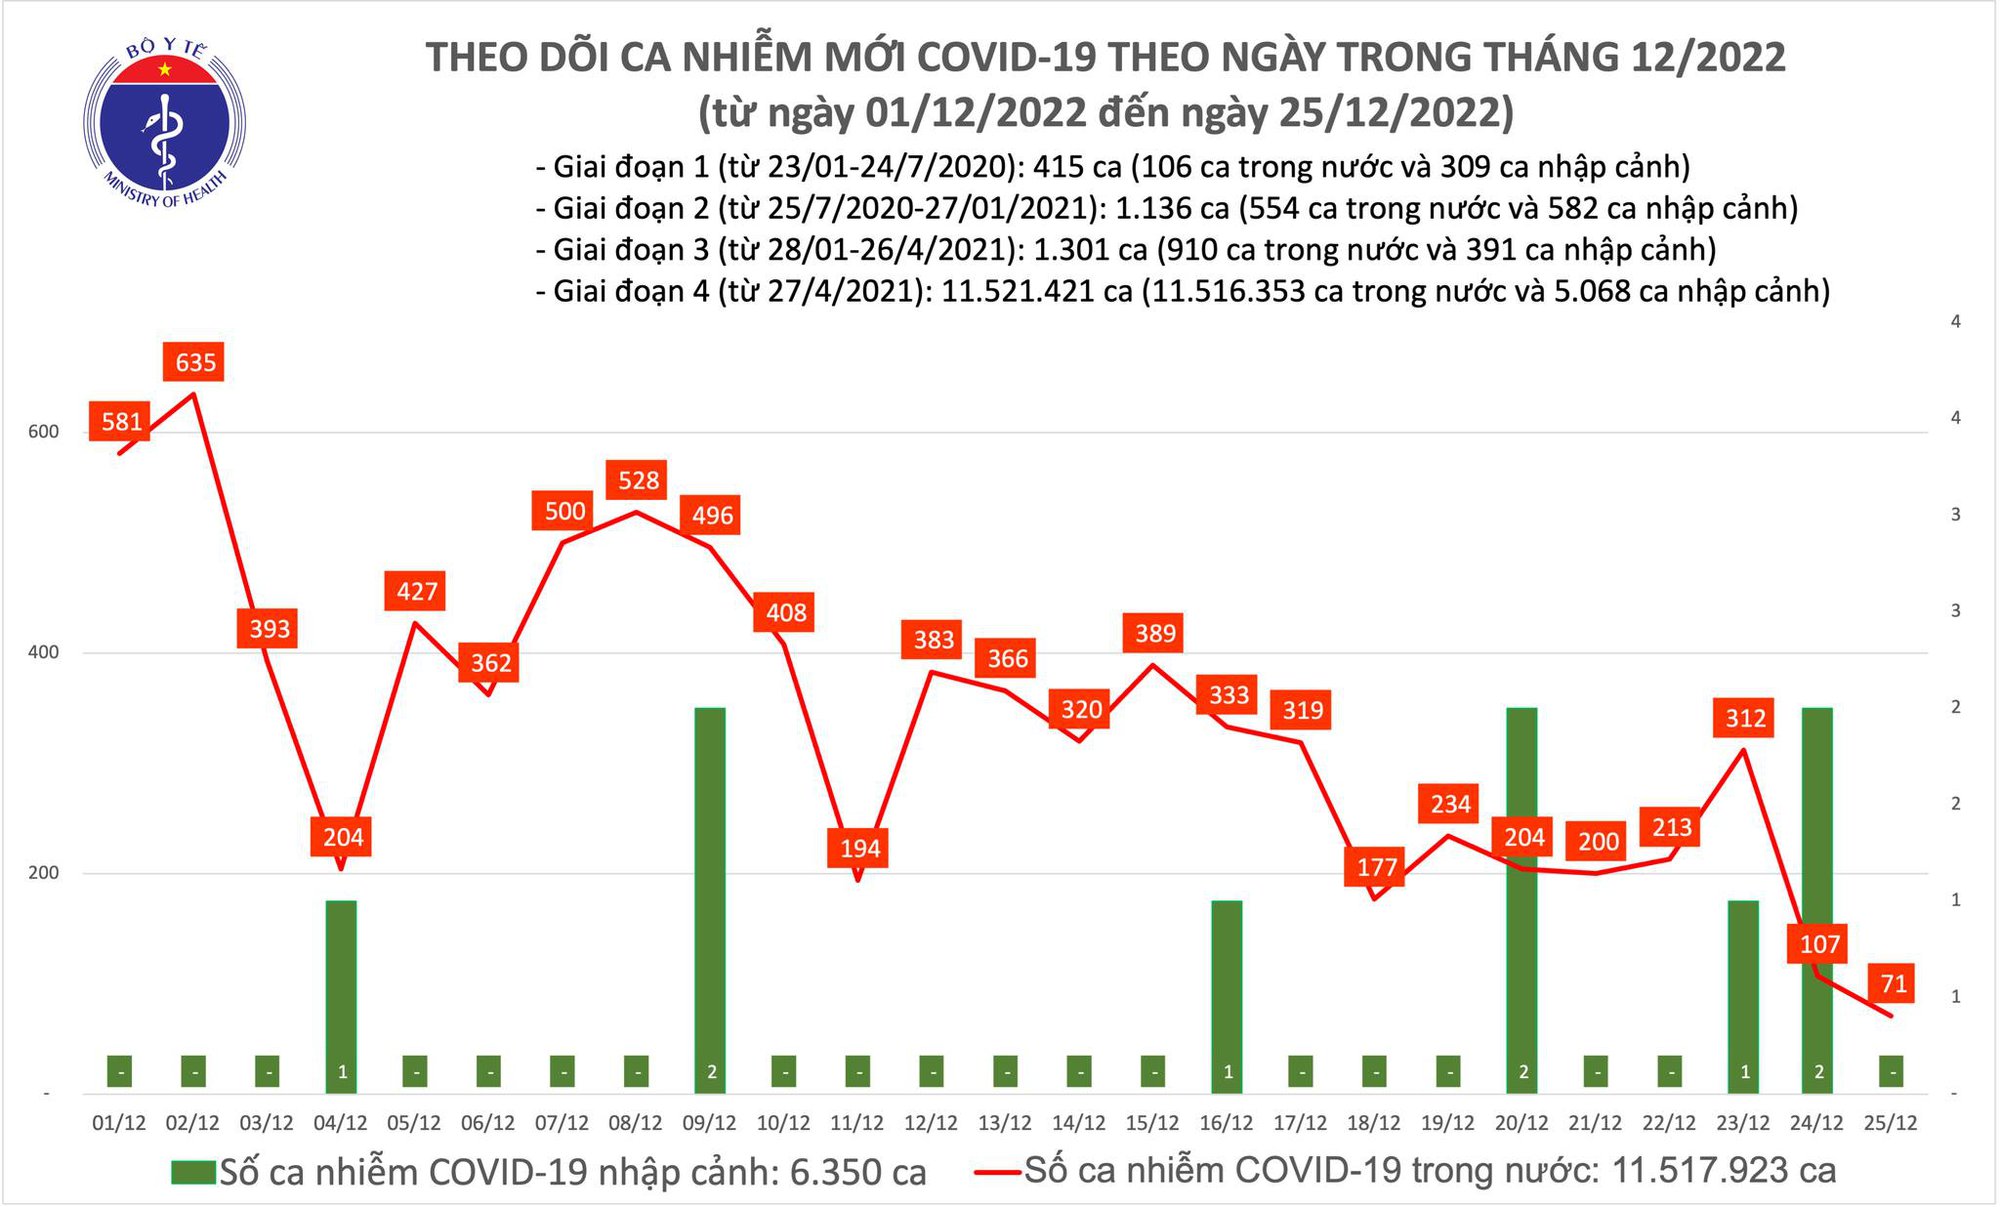 Ngày 25/12: Chỉ có 71 ca COVID-19 mới, thấp nhất trong nhiều tháng qua - Ảnh 1.